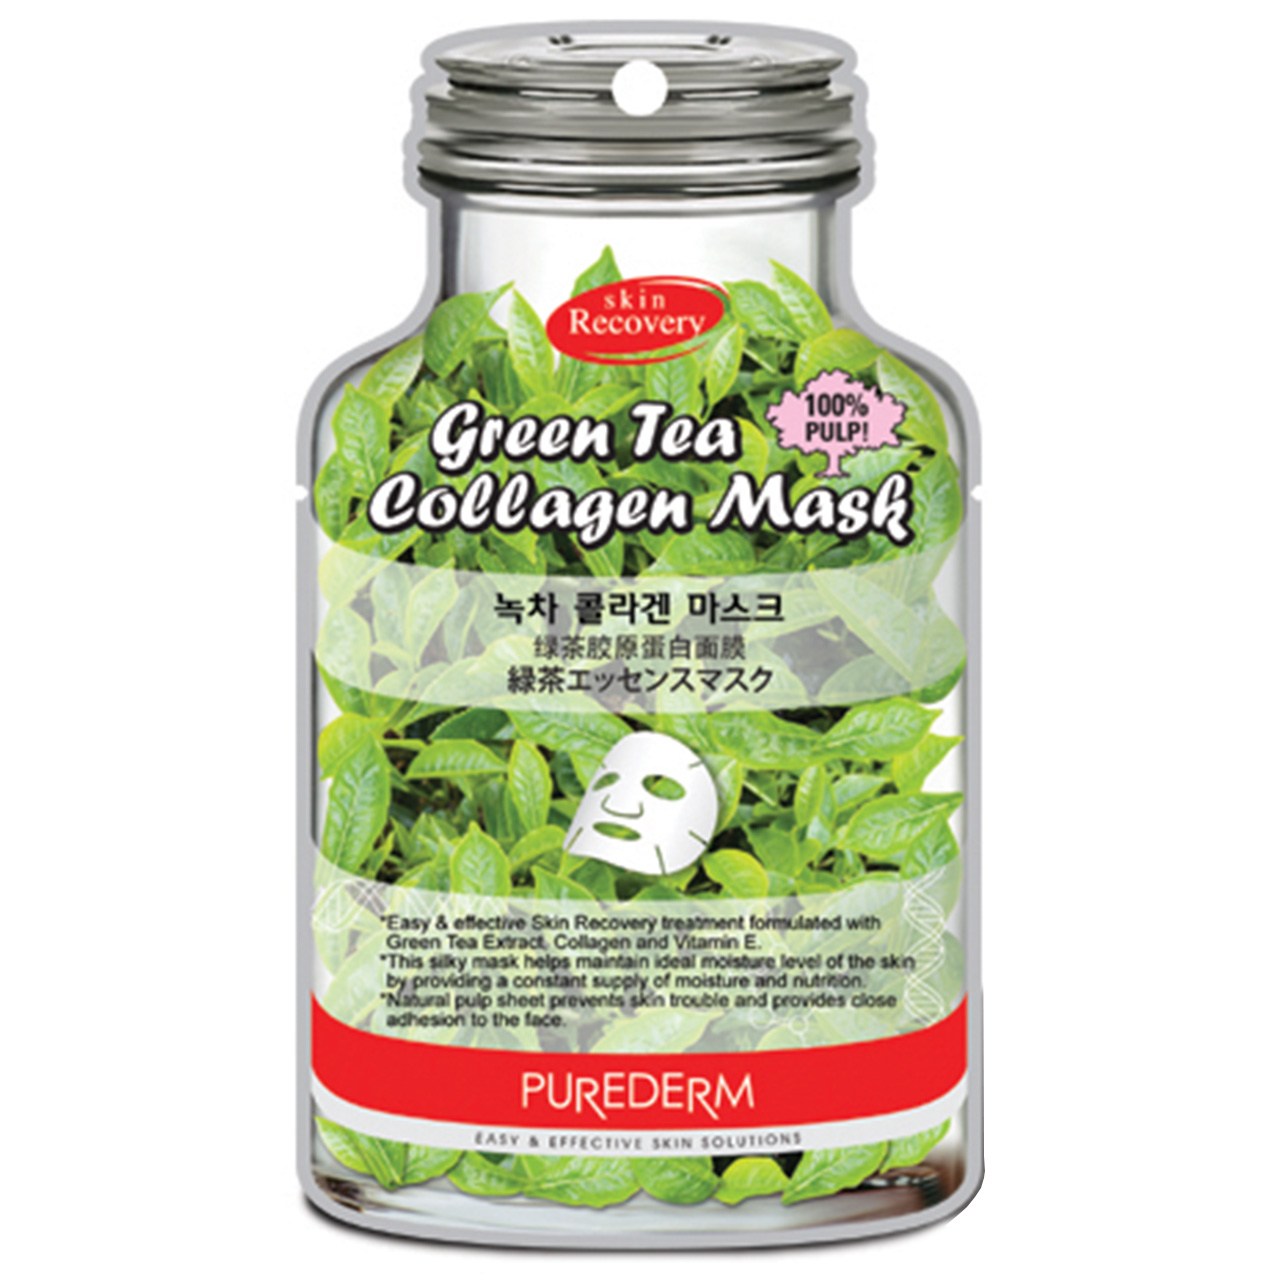 ماسک نقابی پیوردرم مدل Green Tea - یک ورق